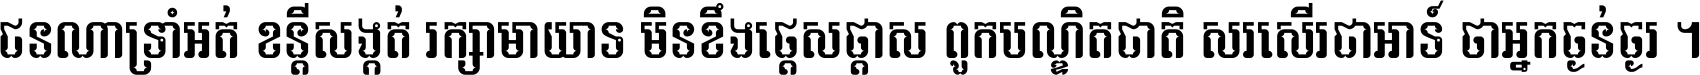 Angkor Sovann Fantasy_02